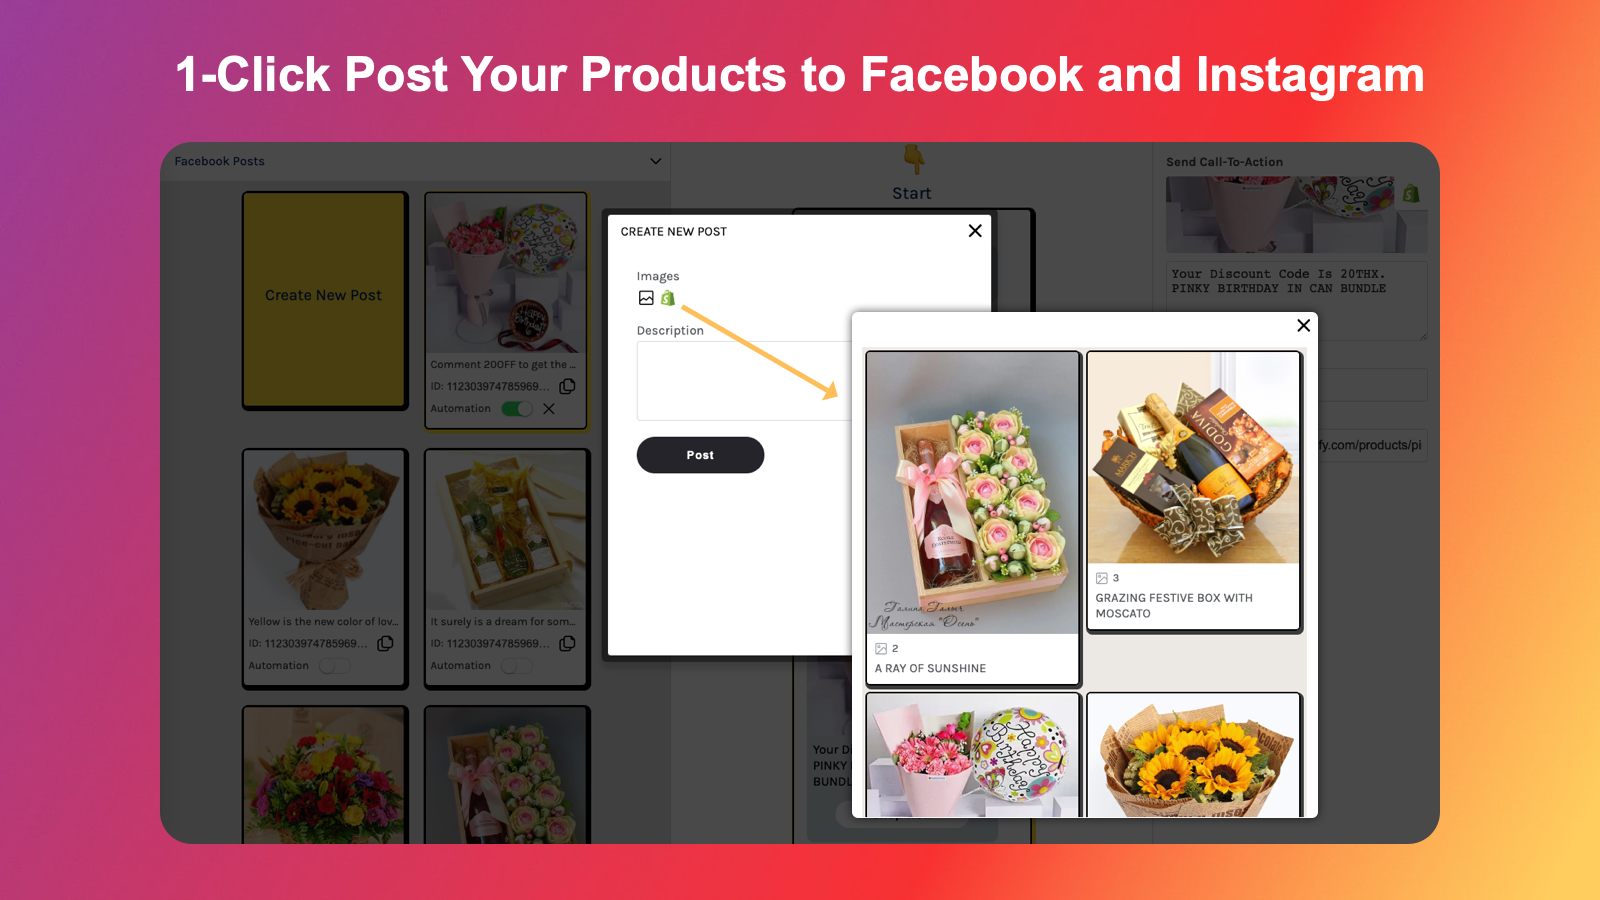 Postar seus produtos no Instagram e Facebook é fácil